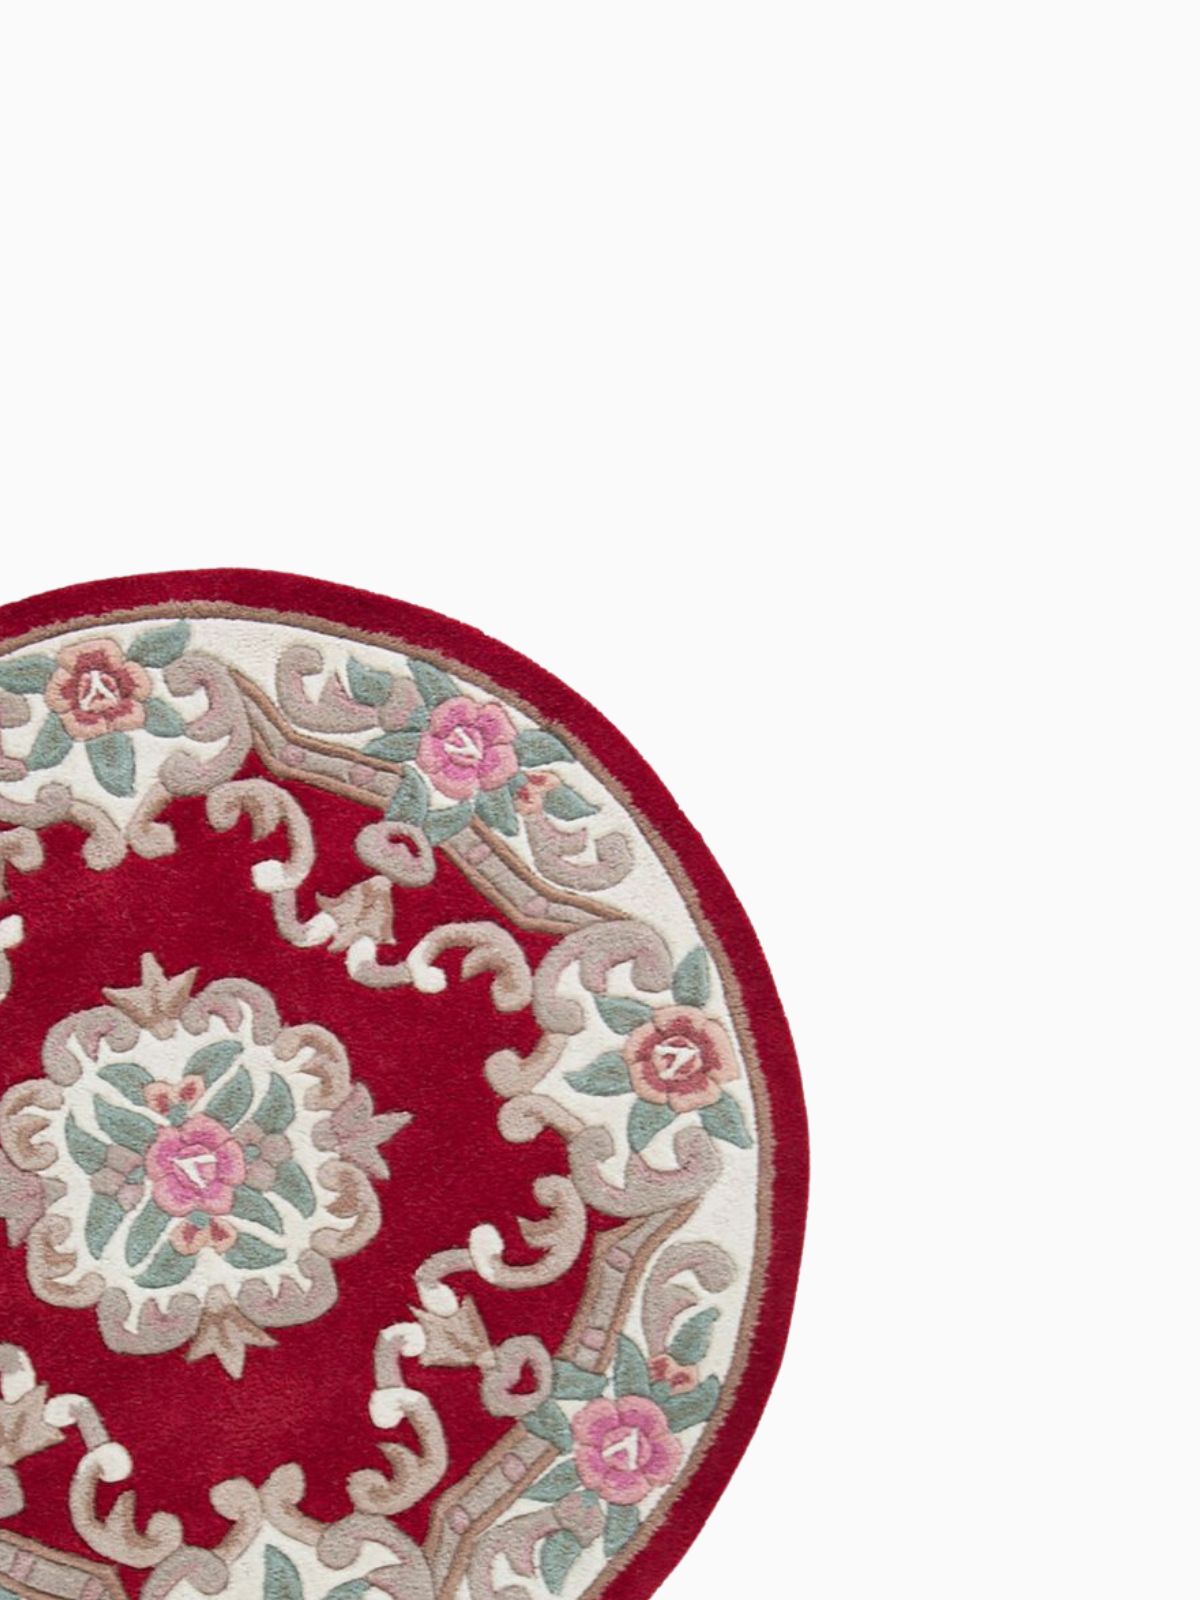 Tappeto rotondo orientale Aubusson in lana, colore vrosso e multicolore 120x120 cm.-4